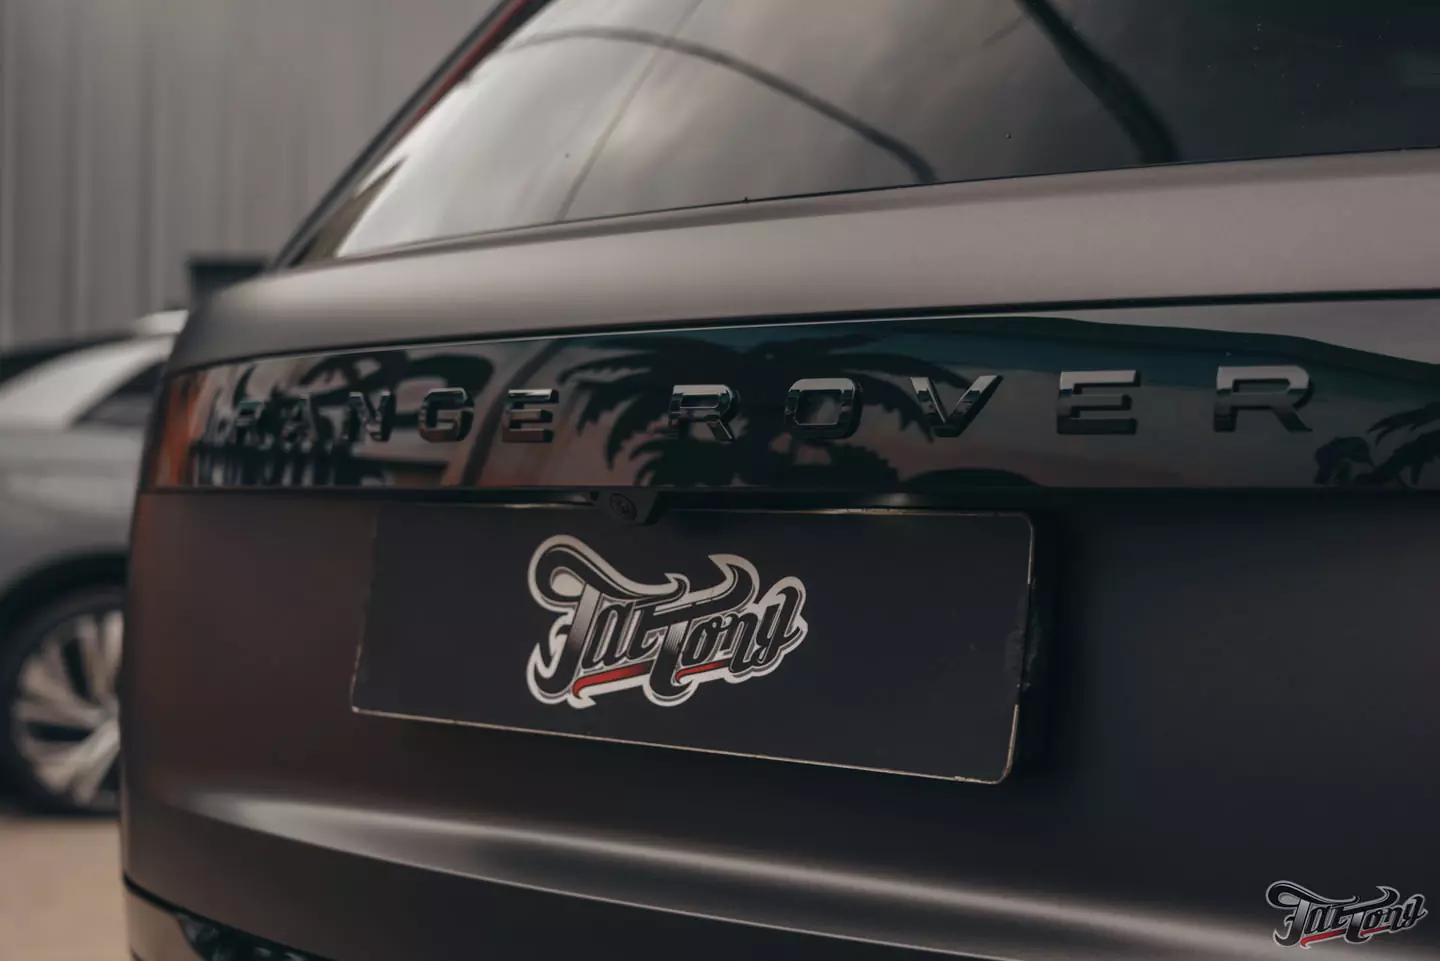 Эксклюзивный Range Rover Long: оклейка в матовый полиуретан, тотальный антихром, новые кованые диски и шиномонтаж, покрытие керамикой